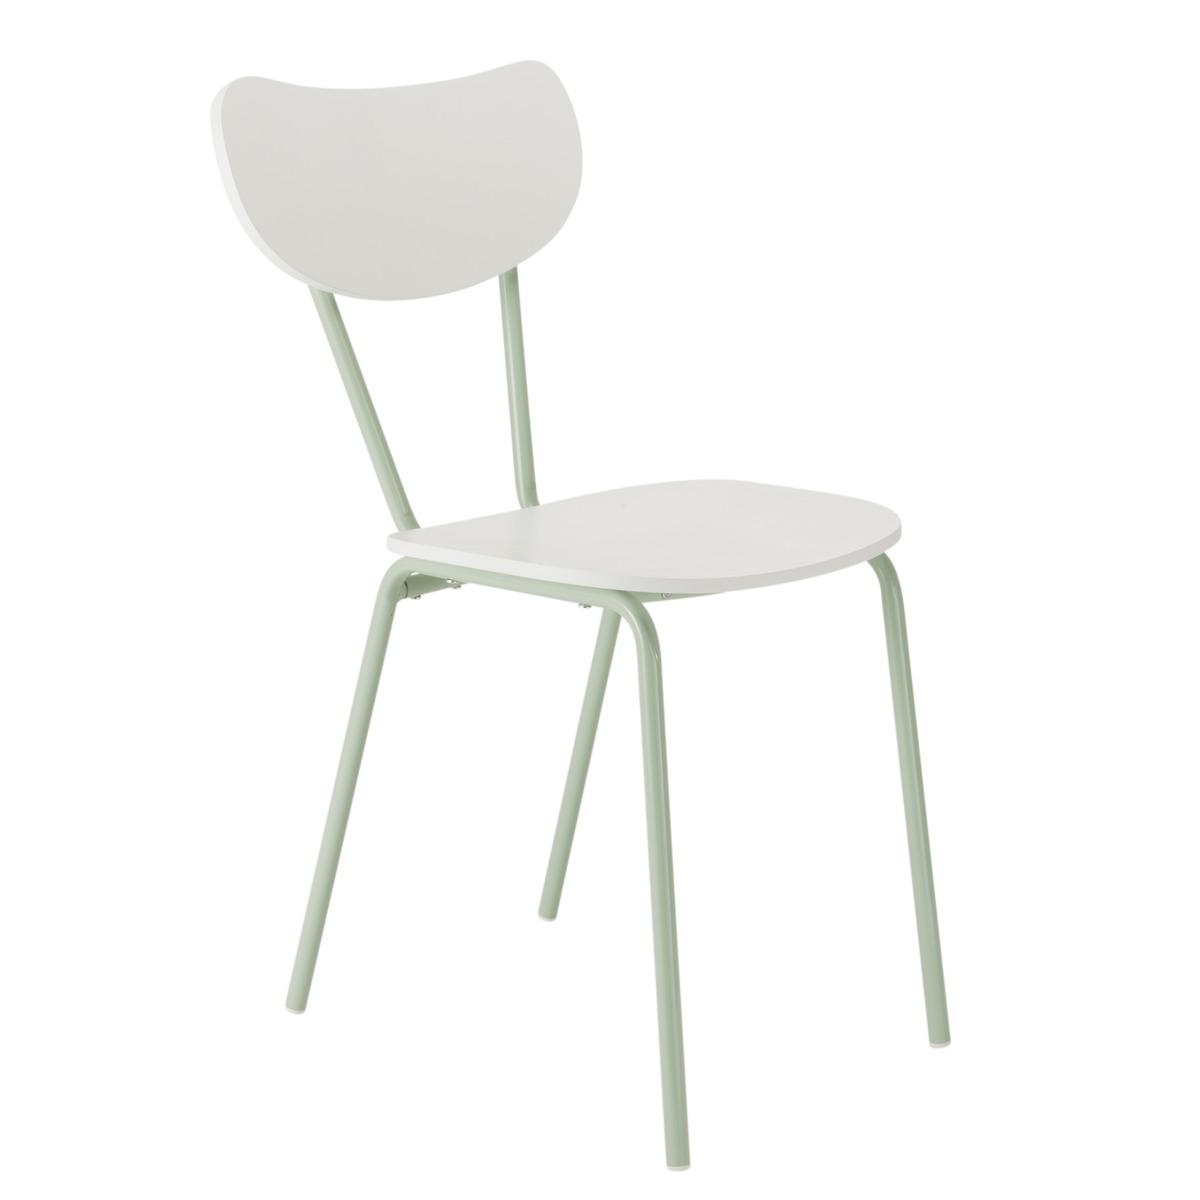 Chaise de cuisine Pin up - 40 x H 80 cm - blanc et vert pastel